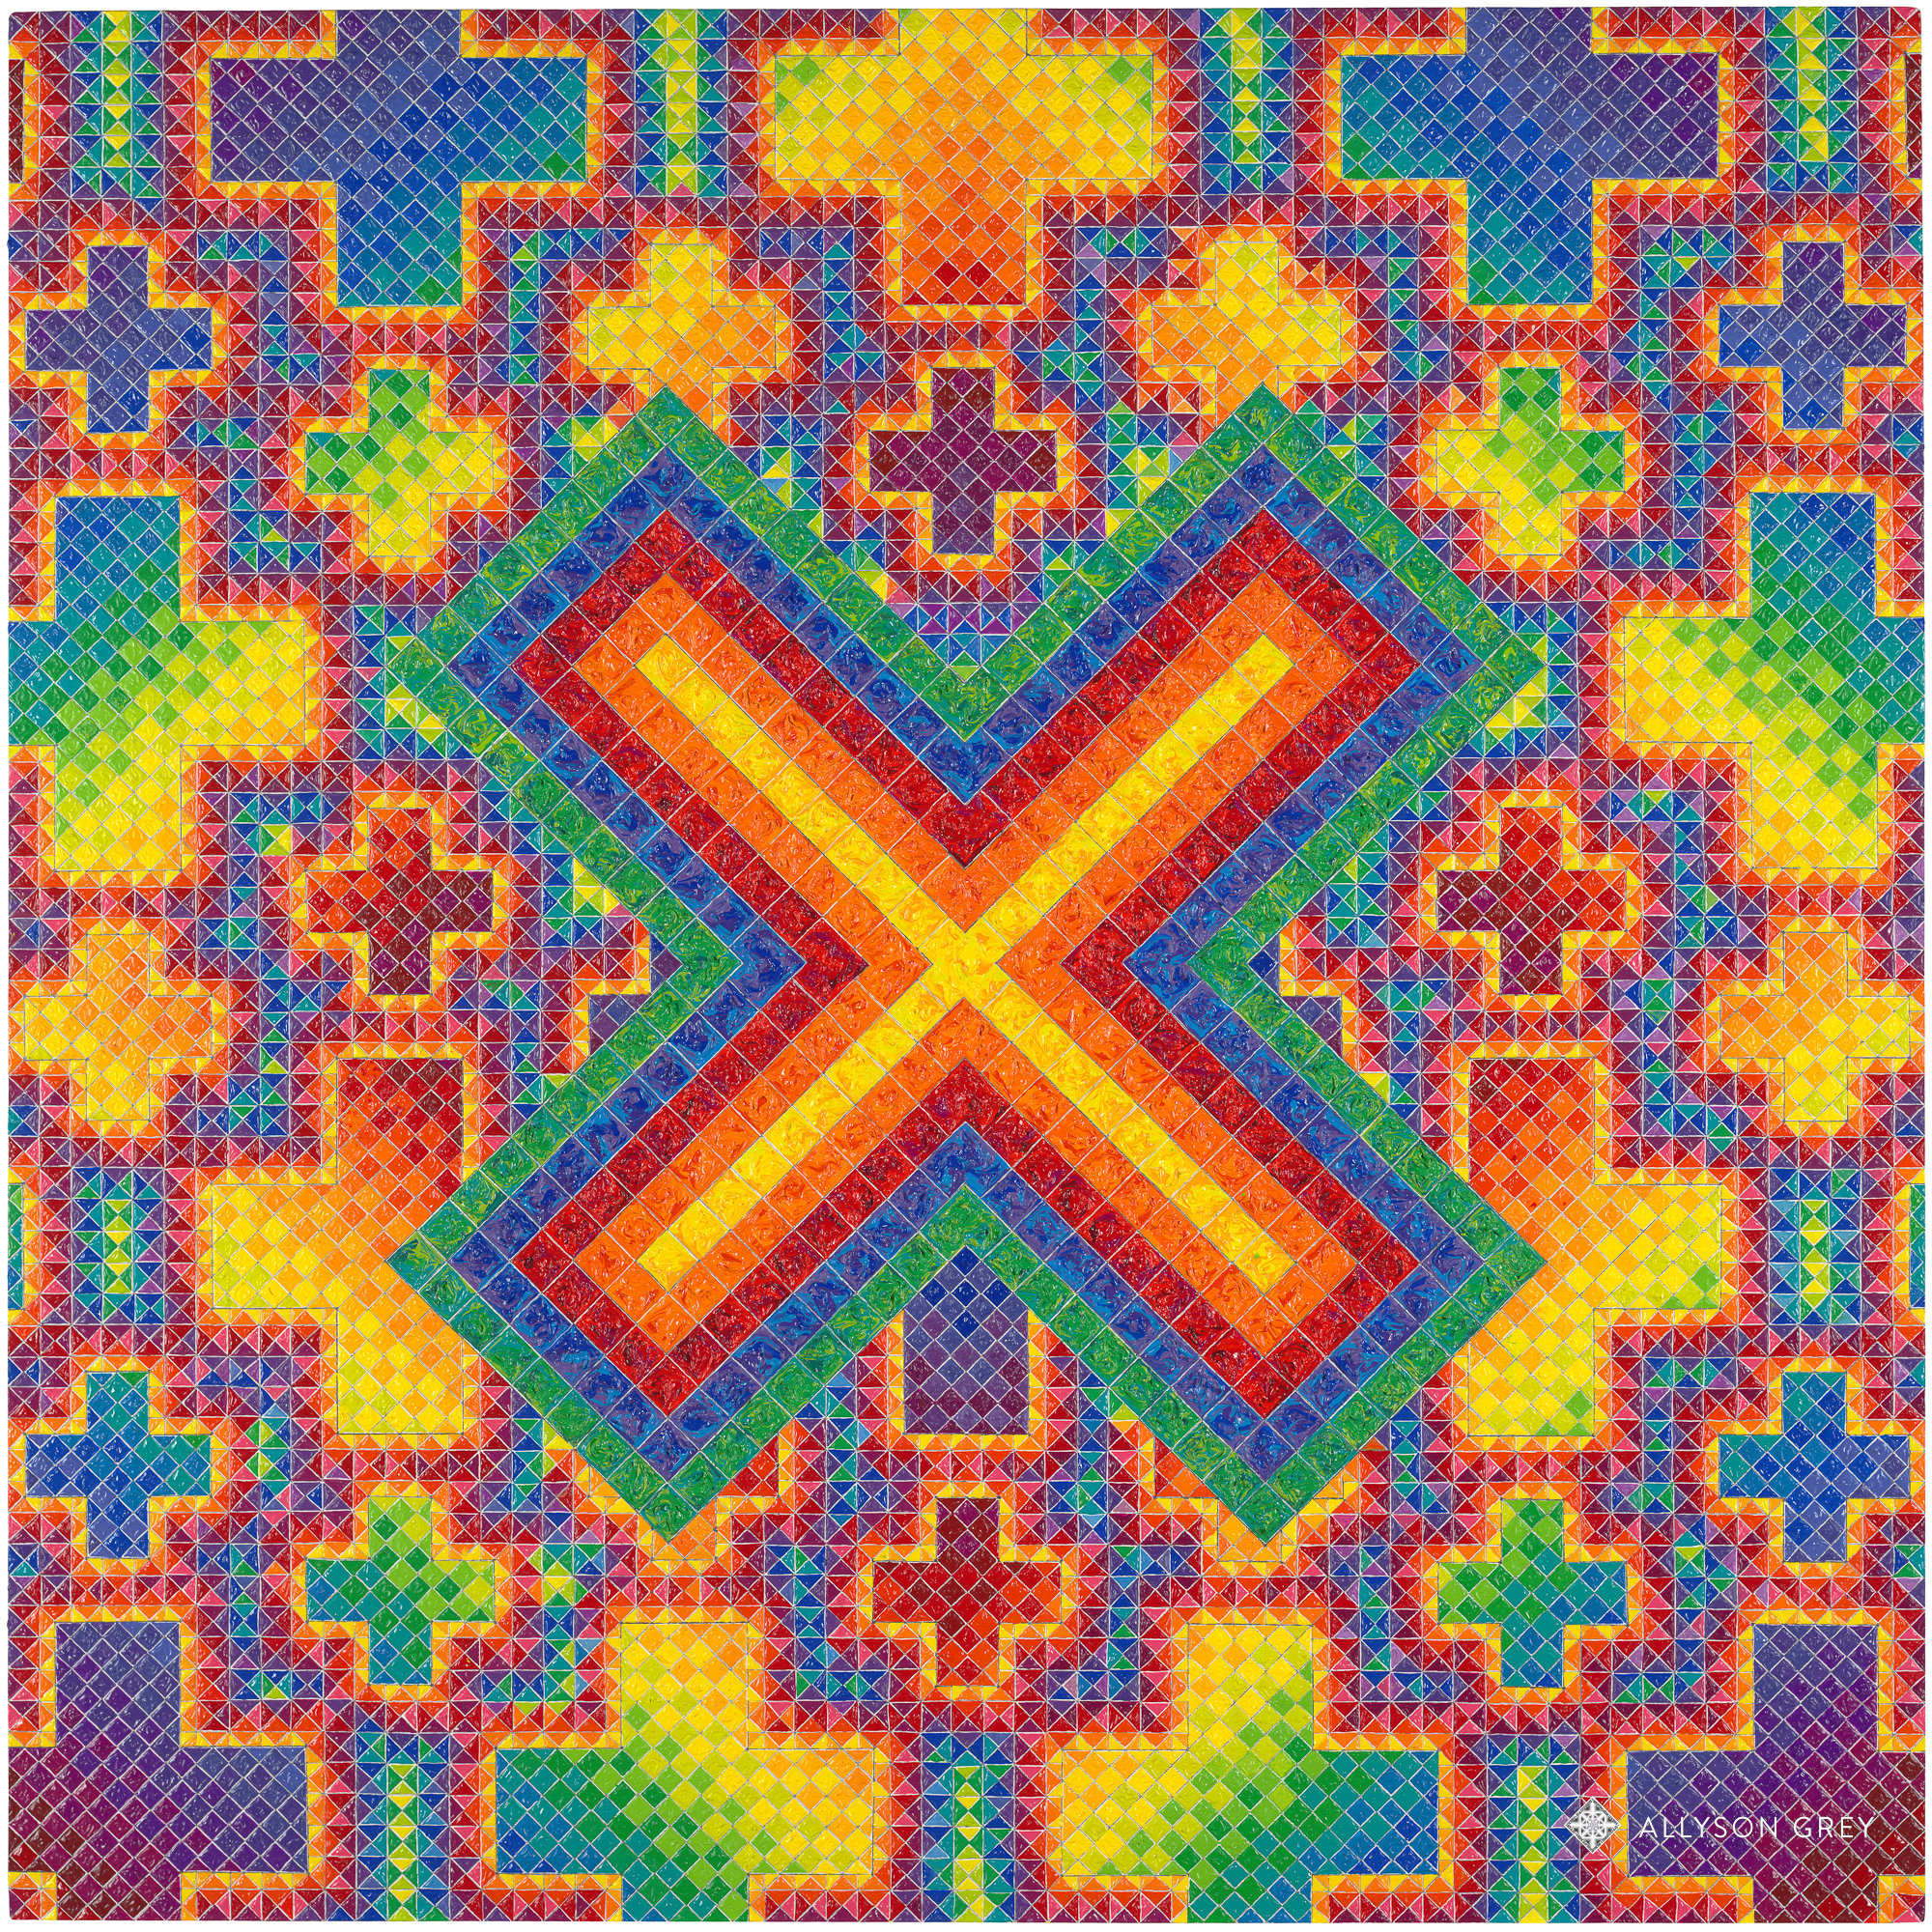 X in a Cross Field